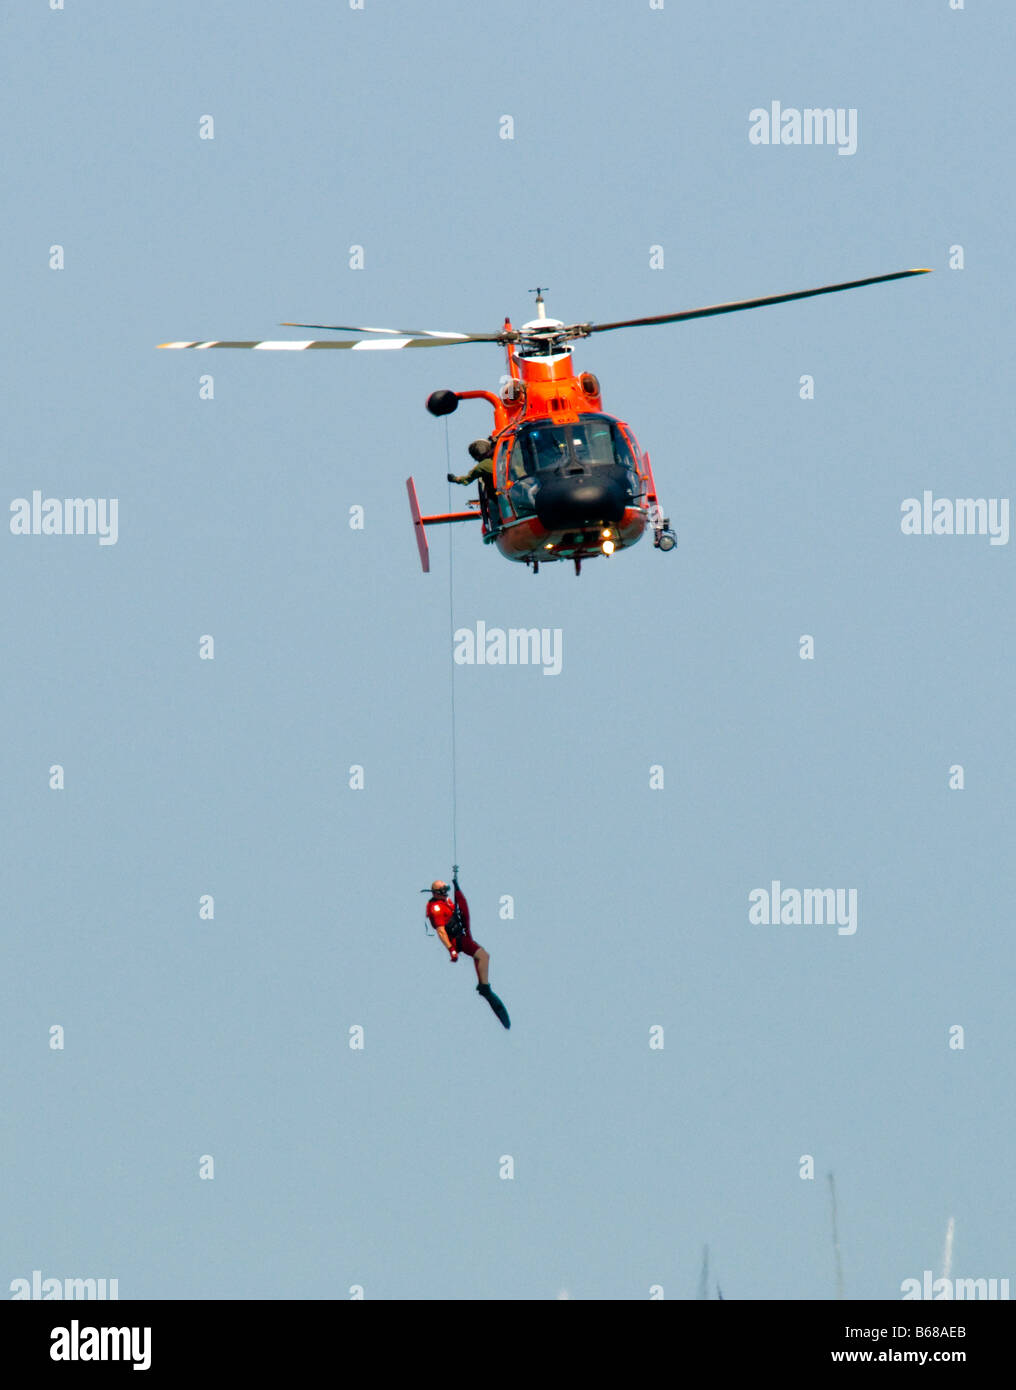 Helicóptero de la Guardia Costera estadounidense y bote de rescate de elevación / nadador de rescate fuera del agua Foto de stock